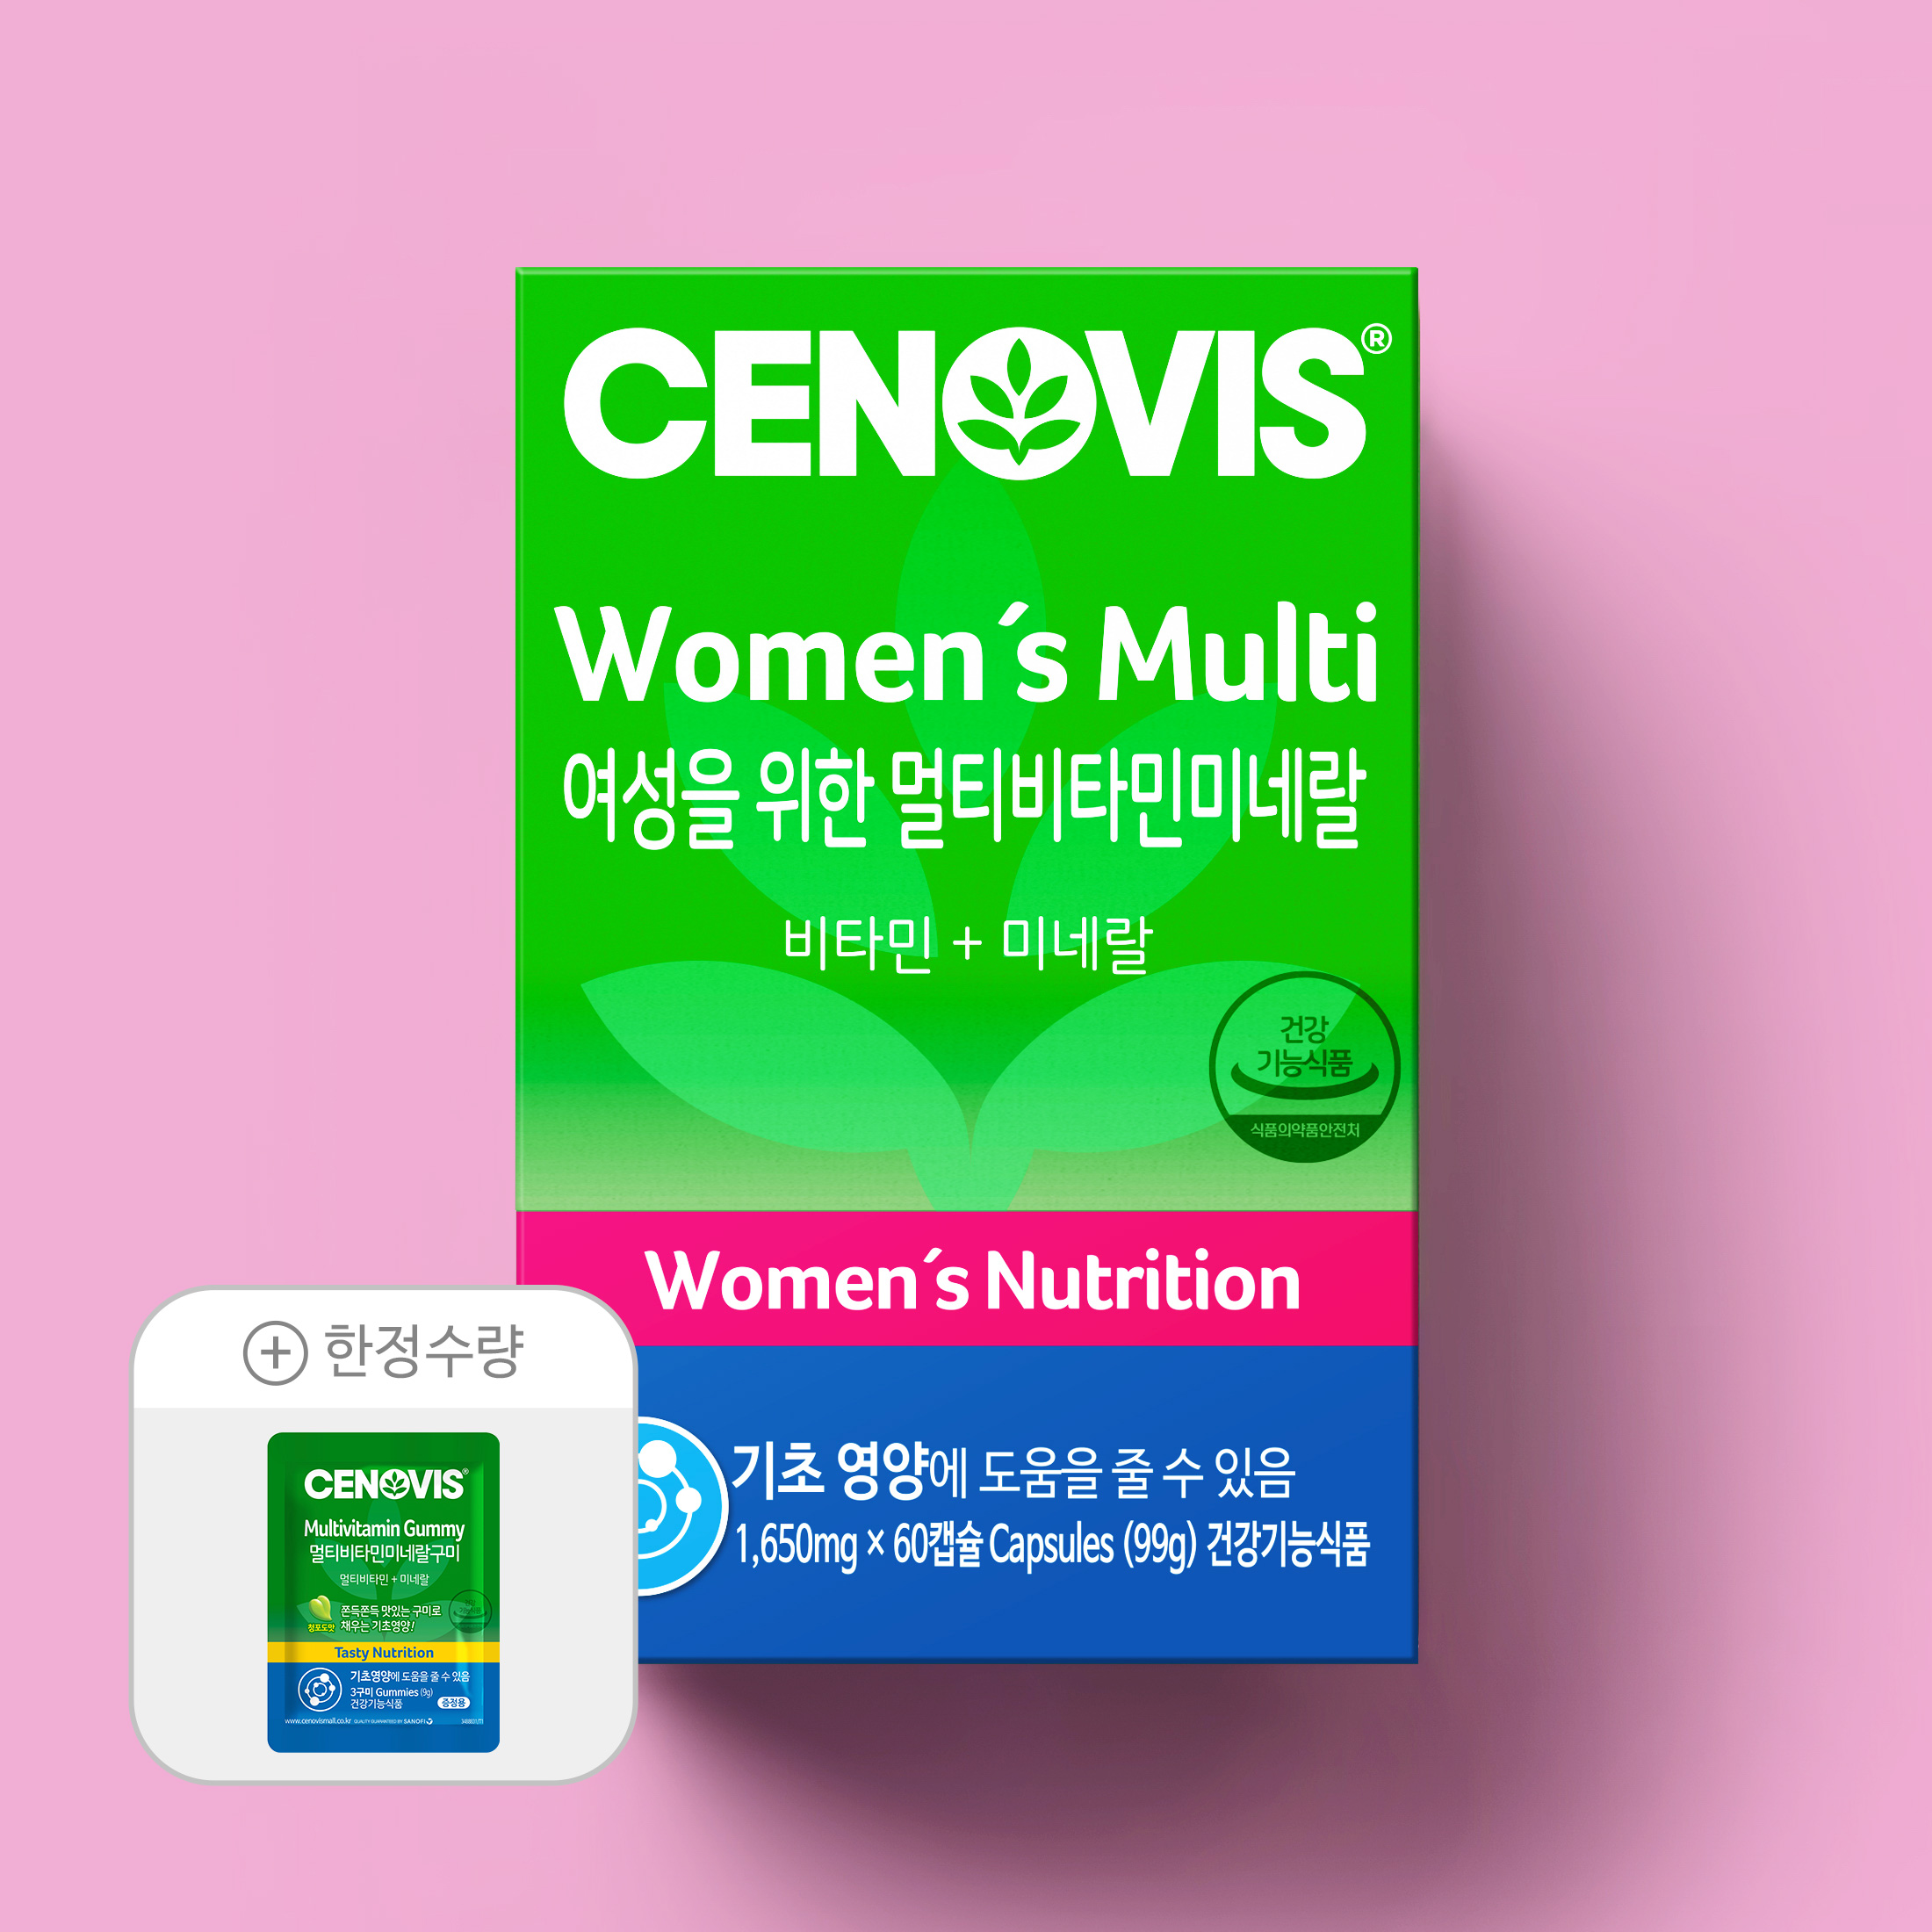 [이달의추천] 여성용멀티비타민 + 한정수량 사은품 증정!